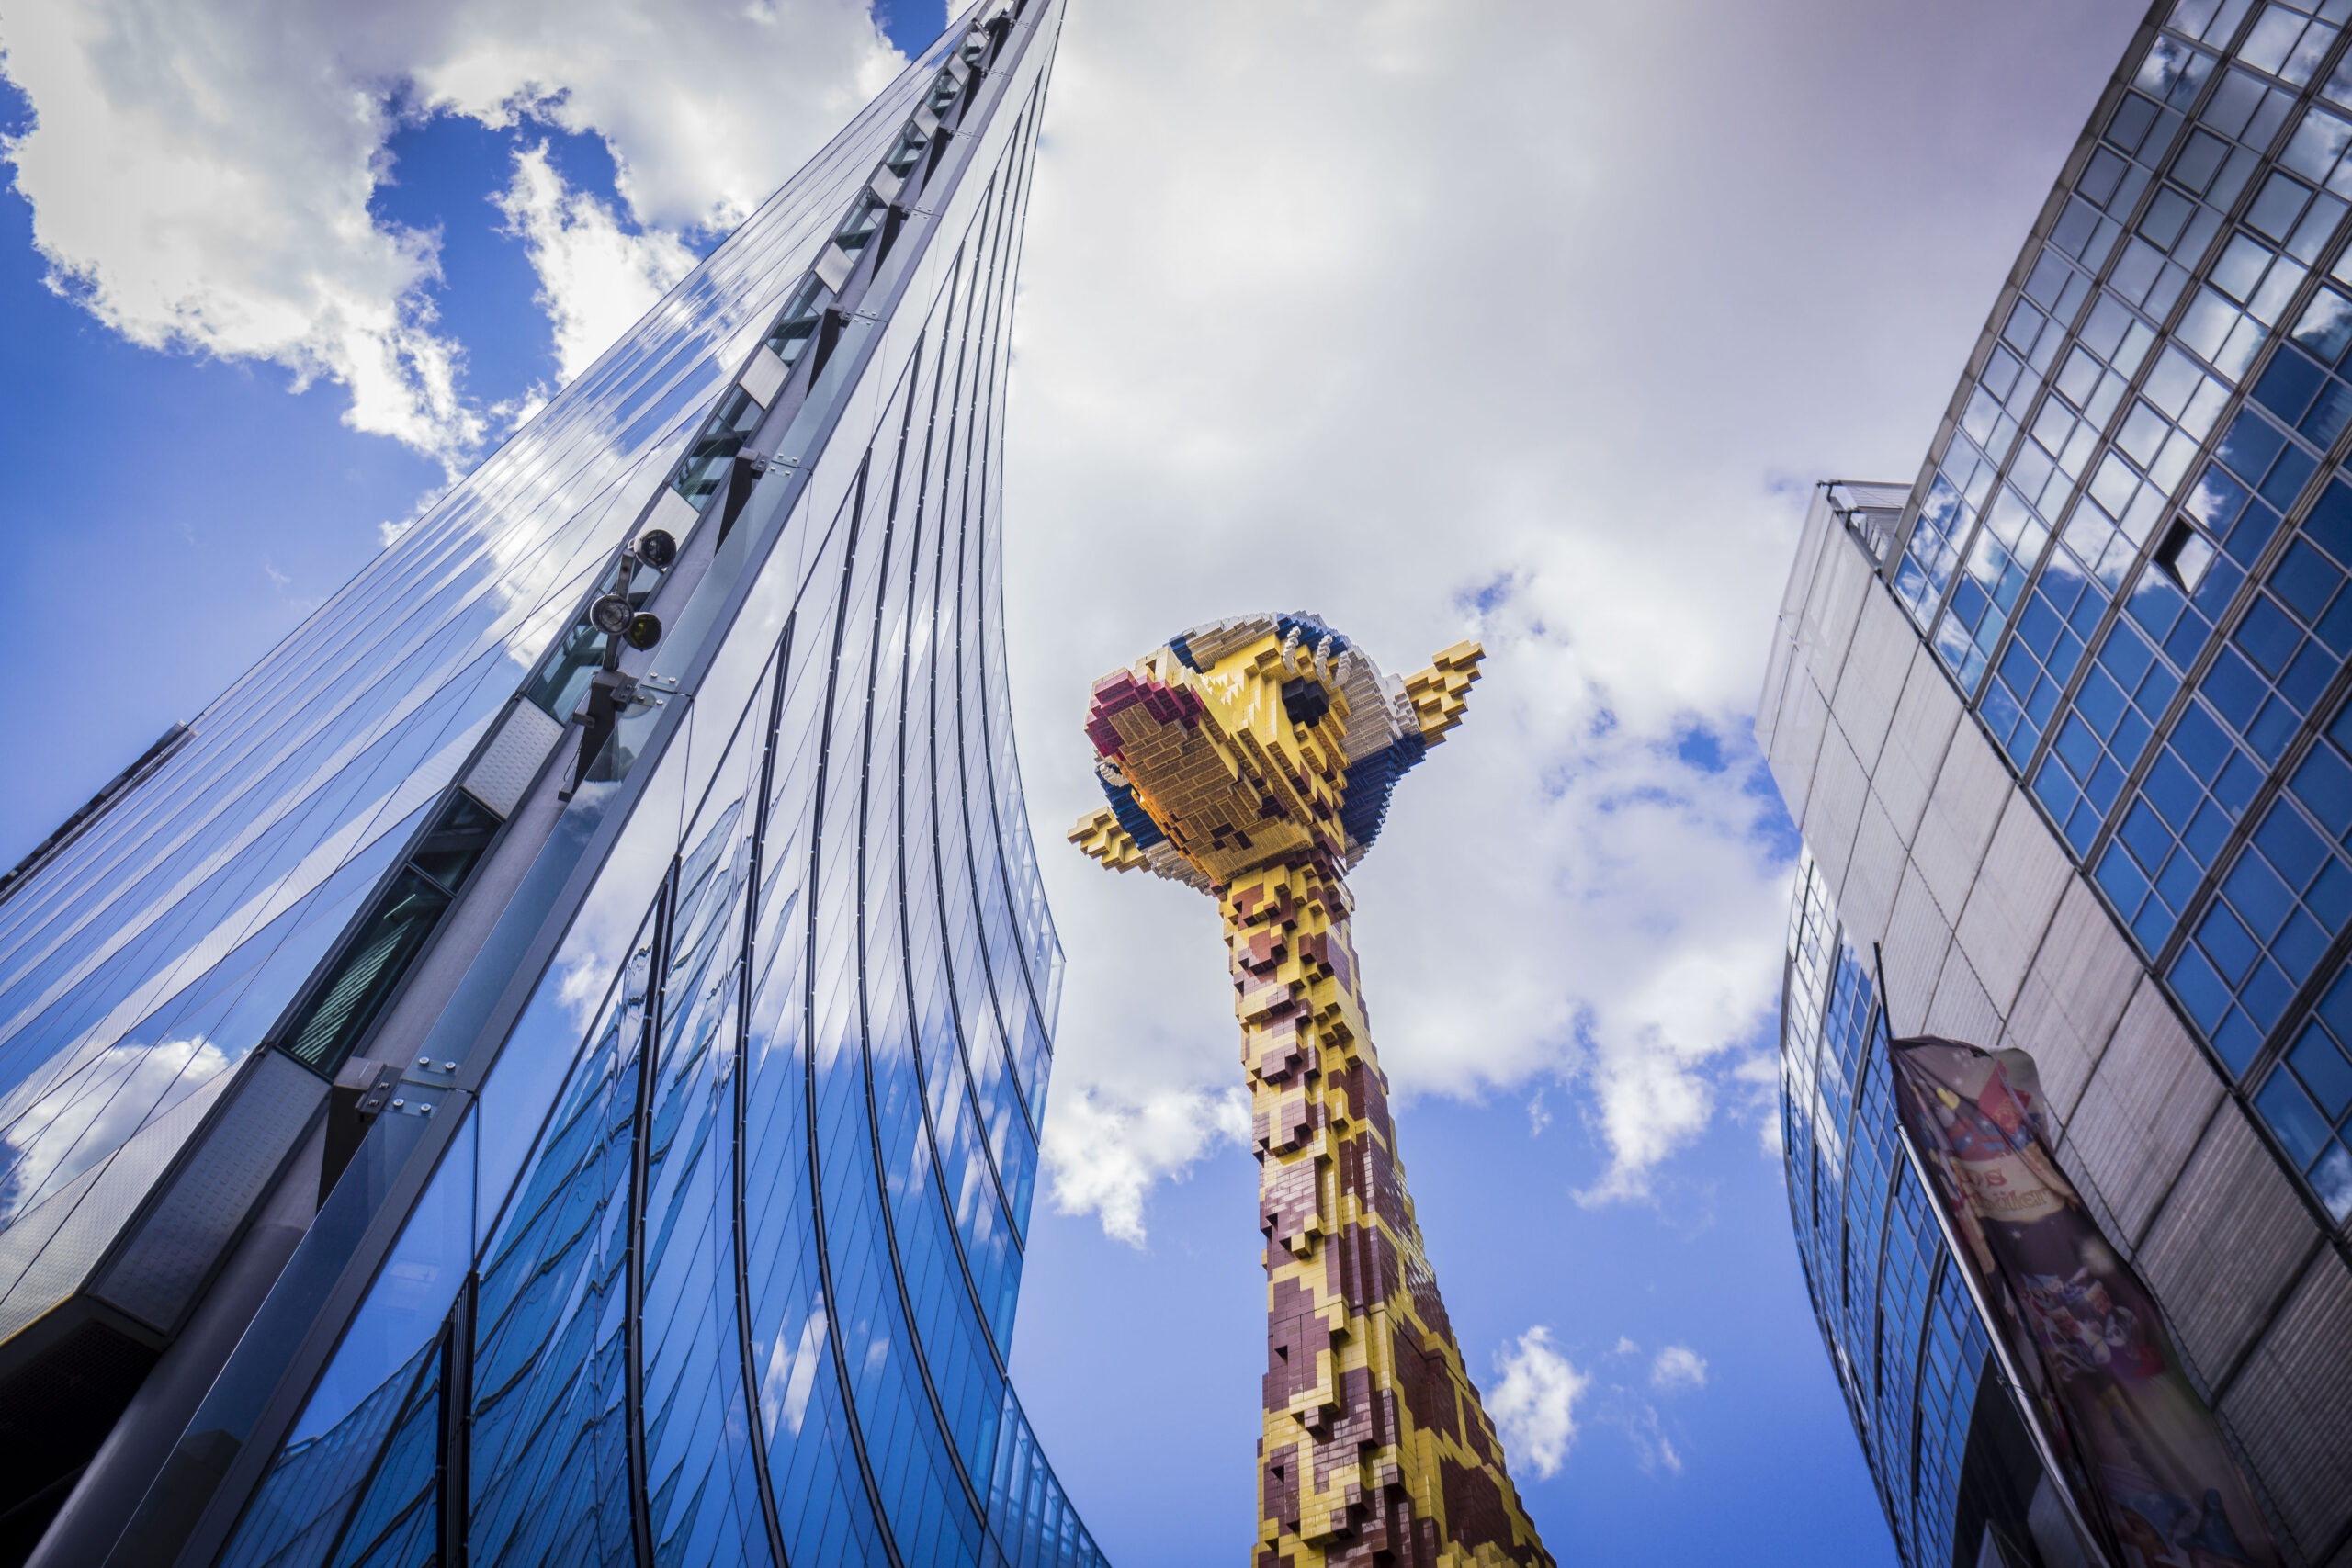 Eine lebensgroße Giraffe aus Lego begrüßt die Besucher:innen des Lego Dicovery Centres Berlin bei der Ankunft.